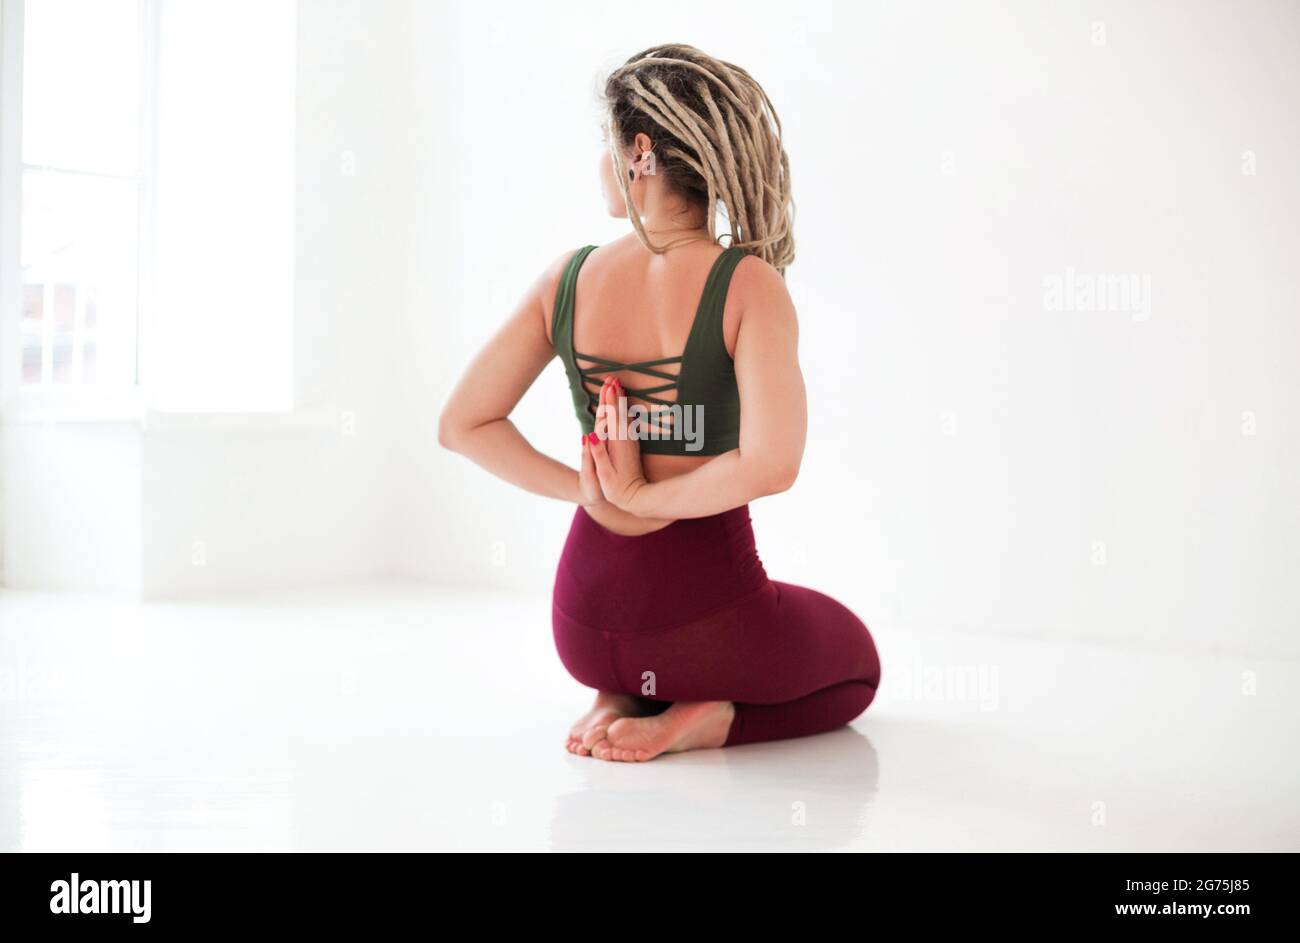 Ejercicios De Yoga. Mujer Con Tipo De Cuerpo Delgado Deportivo En Ropa  Interior Que Está En El Estudio Foto de archivo - Imagen de atractivo,  dieta: 253275514, ropa yoga mujer